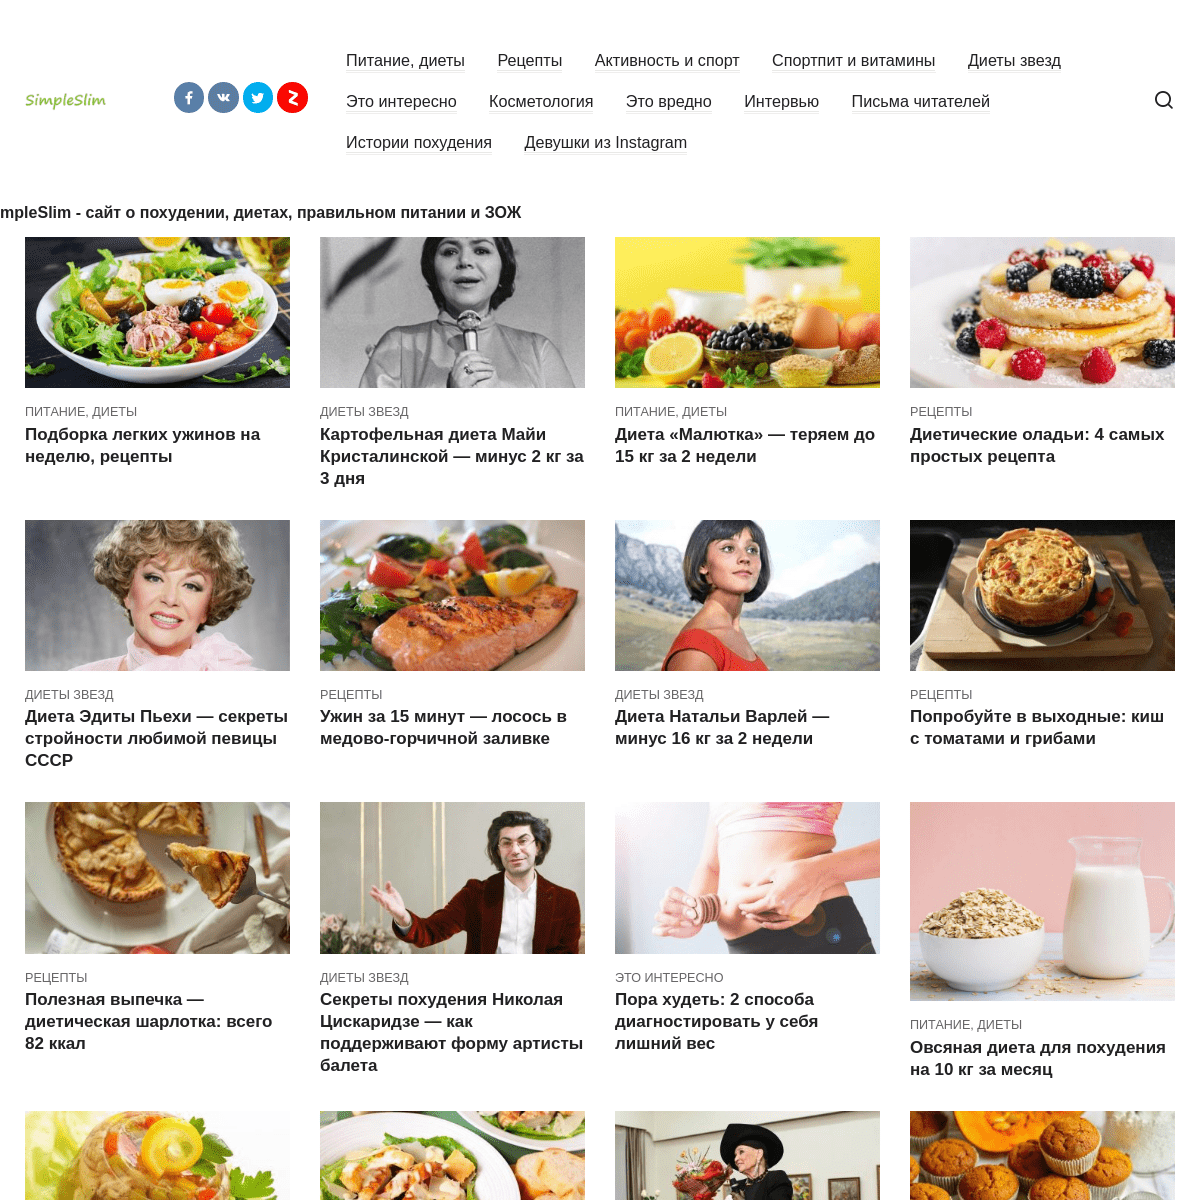 Сайт о похудении, зож и правильном питании и диетах